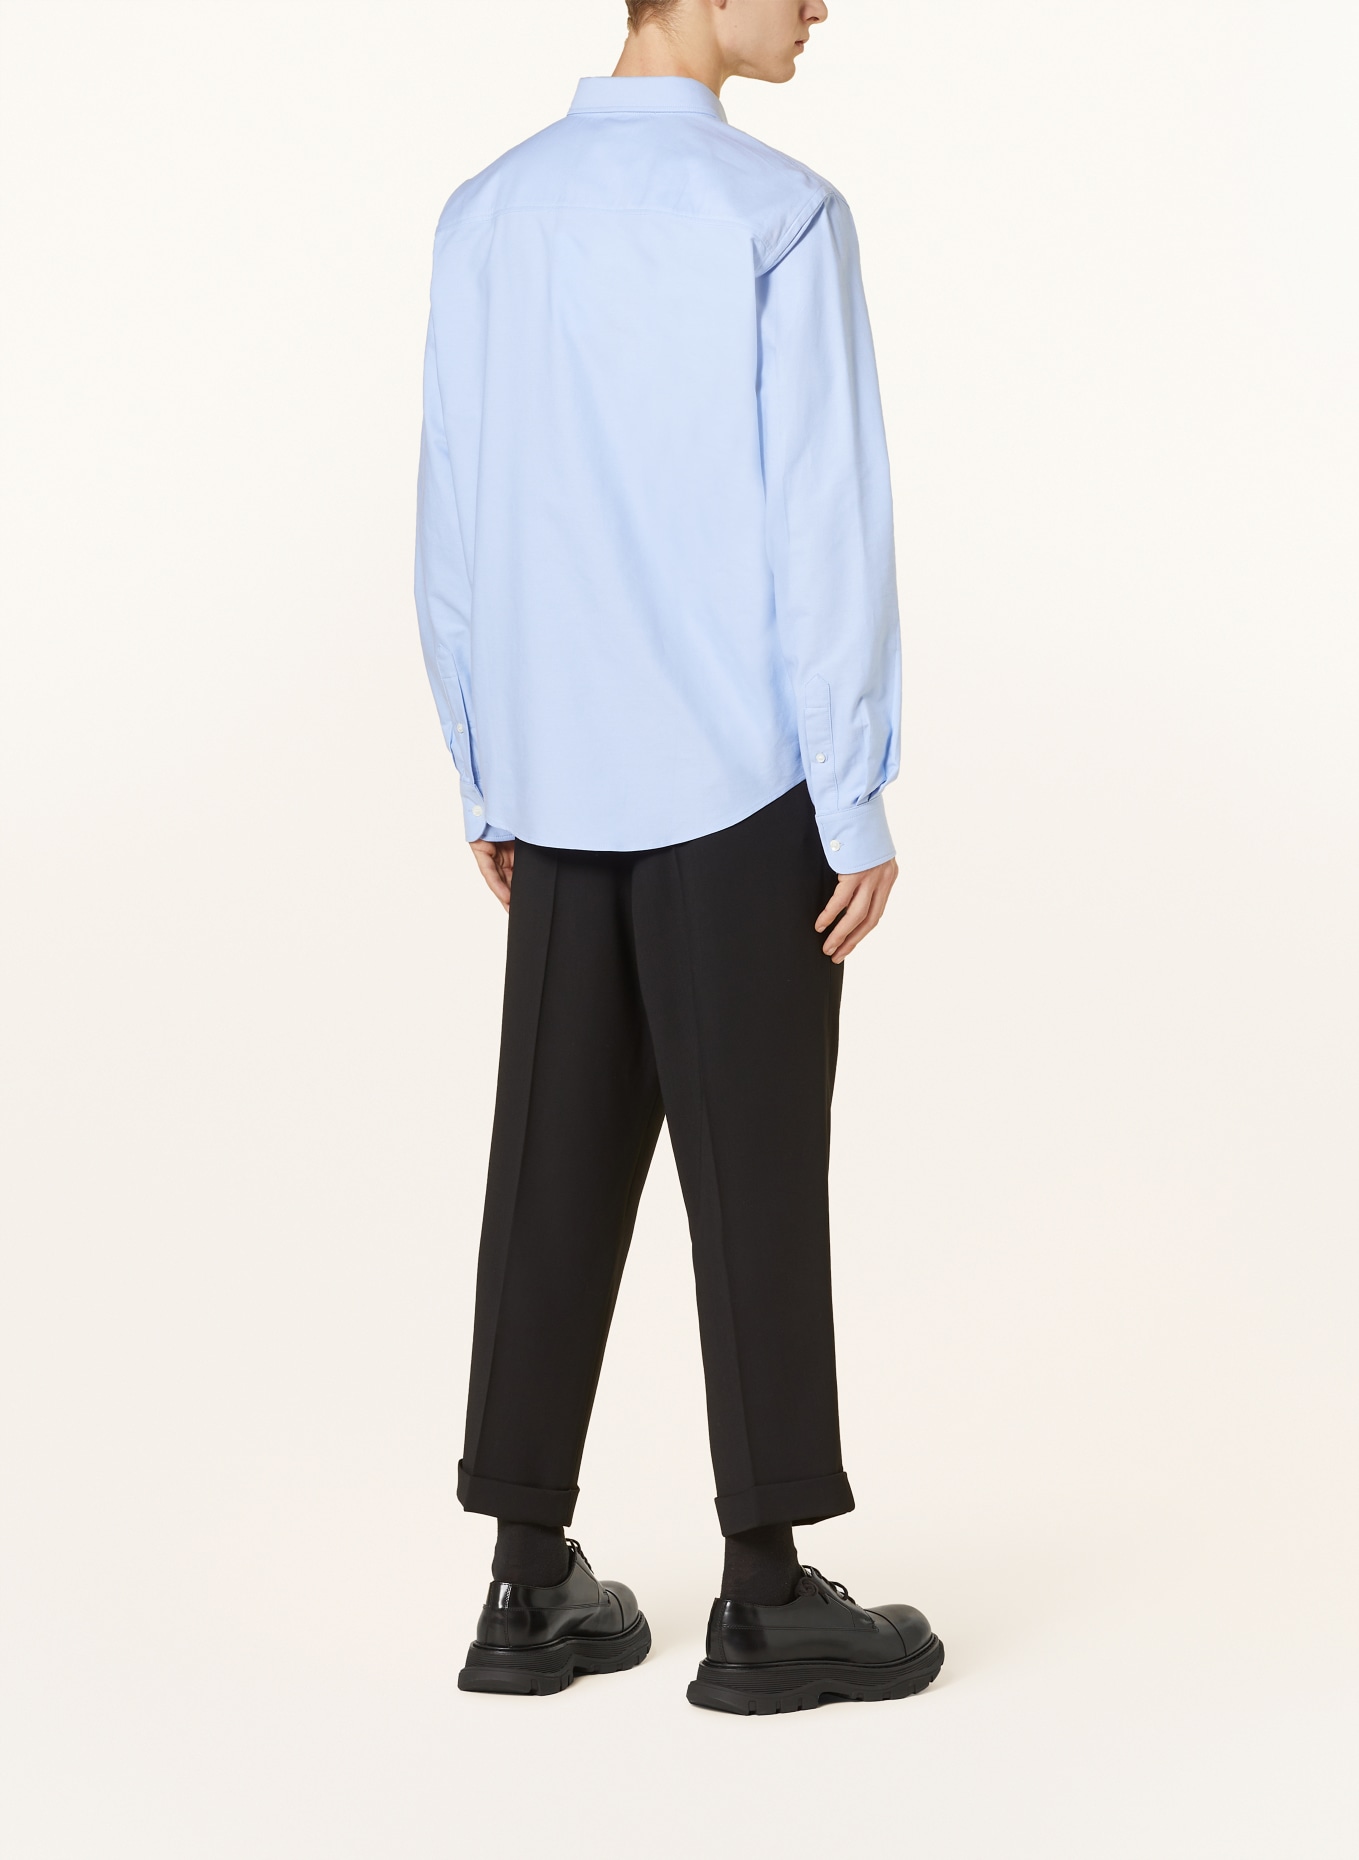 AMI PARIS Oxford shirt classic fit, Color: LIGHT BLUE (Image 3)